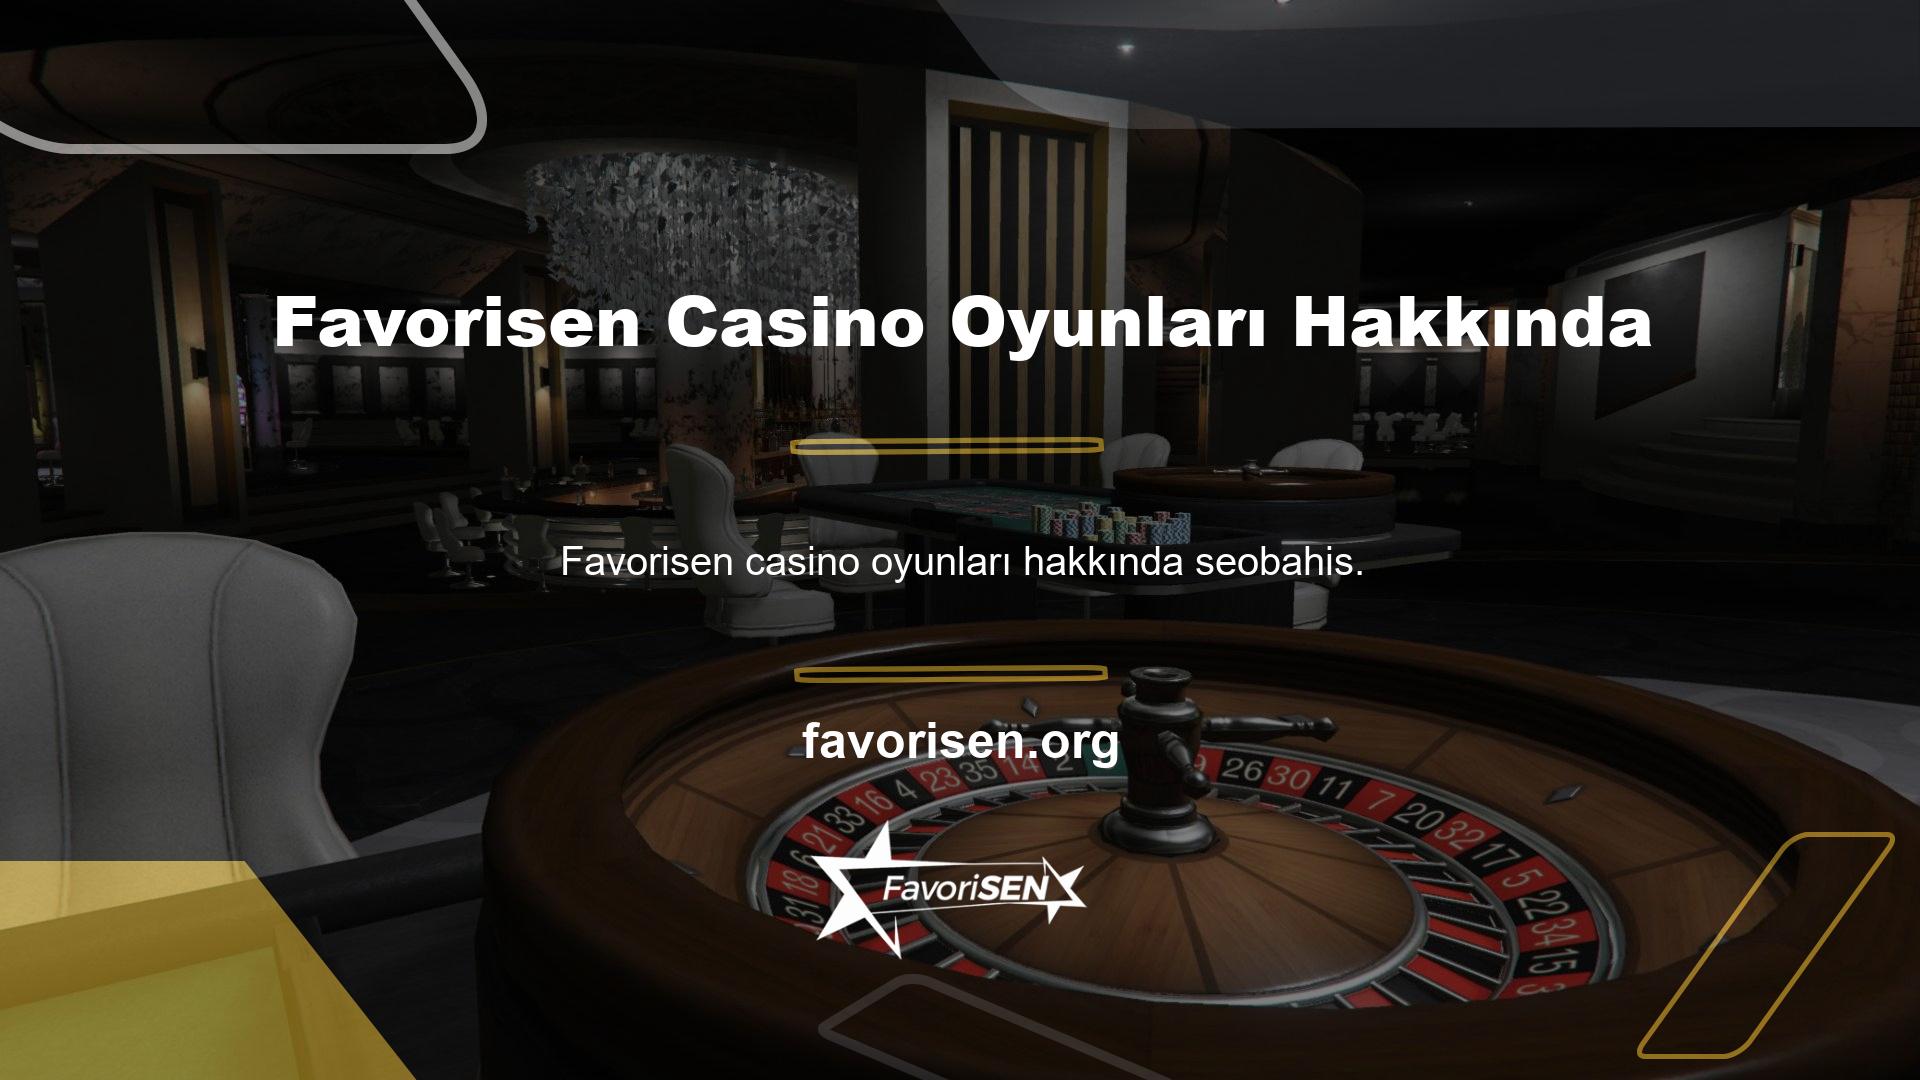 com, Türkiye'de ikamet eden kullanıcılara premium casino oyunları ve oyun hizmetleri sunmak üzere faaliyete başlamıştır